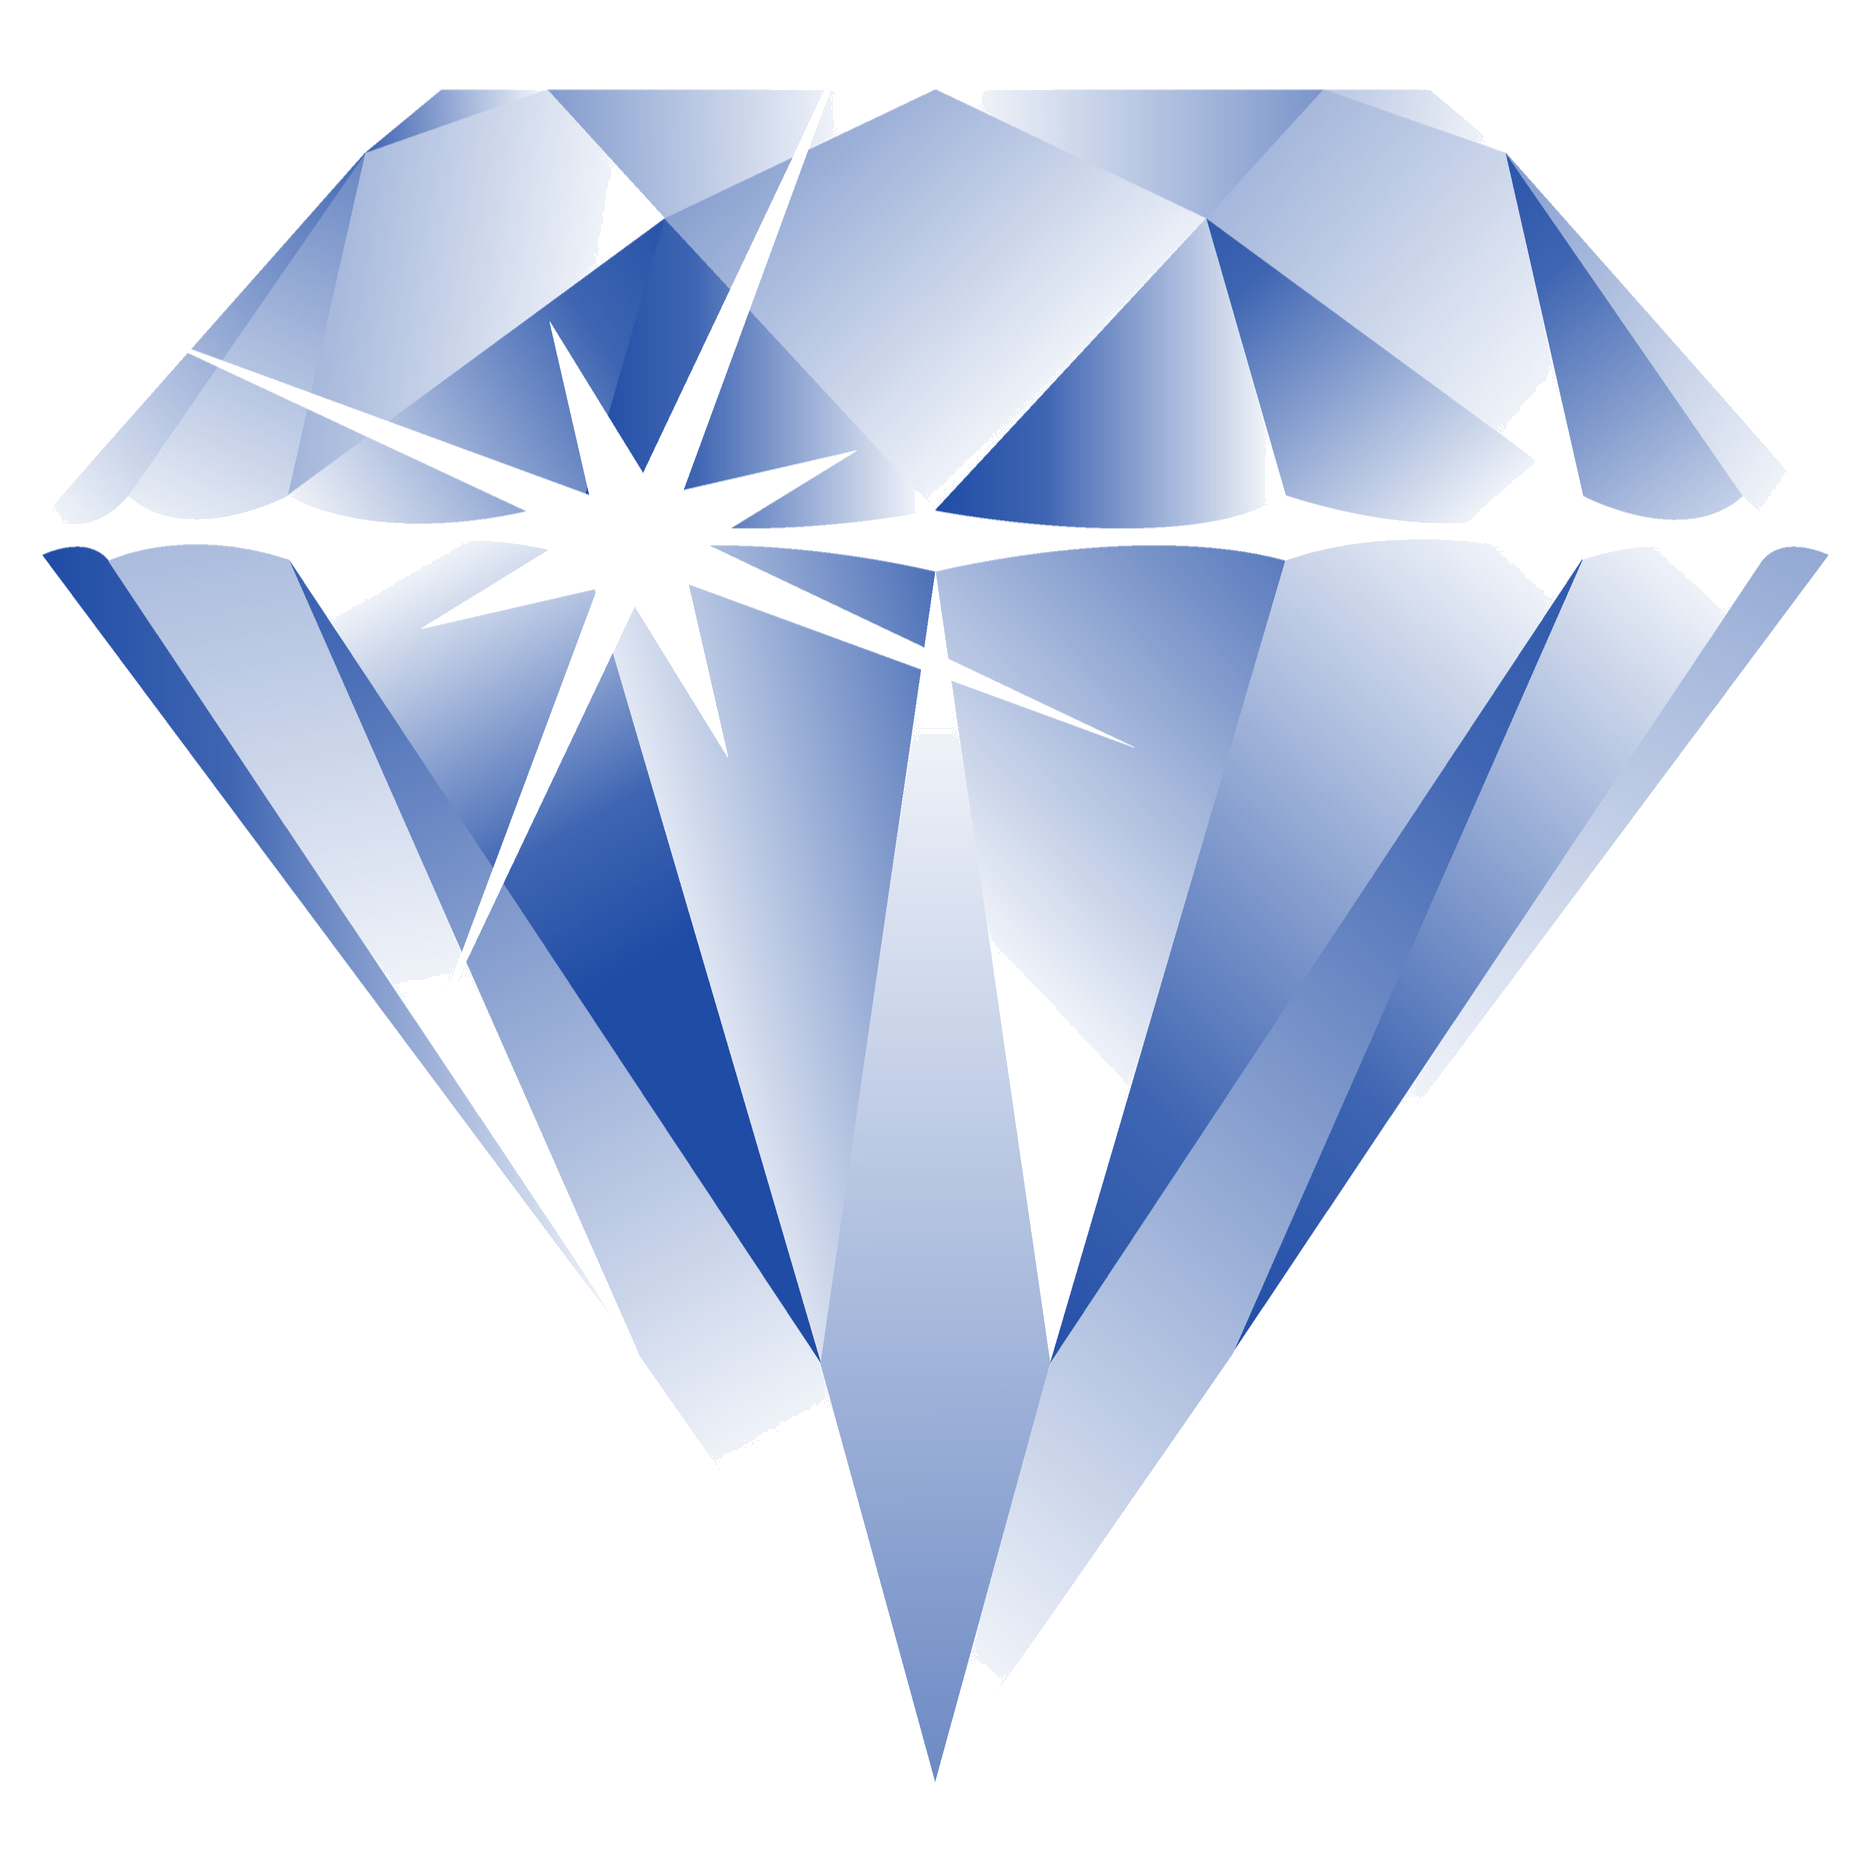 ダイヤモンド壁紙,青い,ダイヤモンド,図,アート紙,グラフィックデザイン